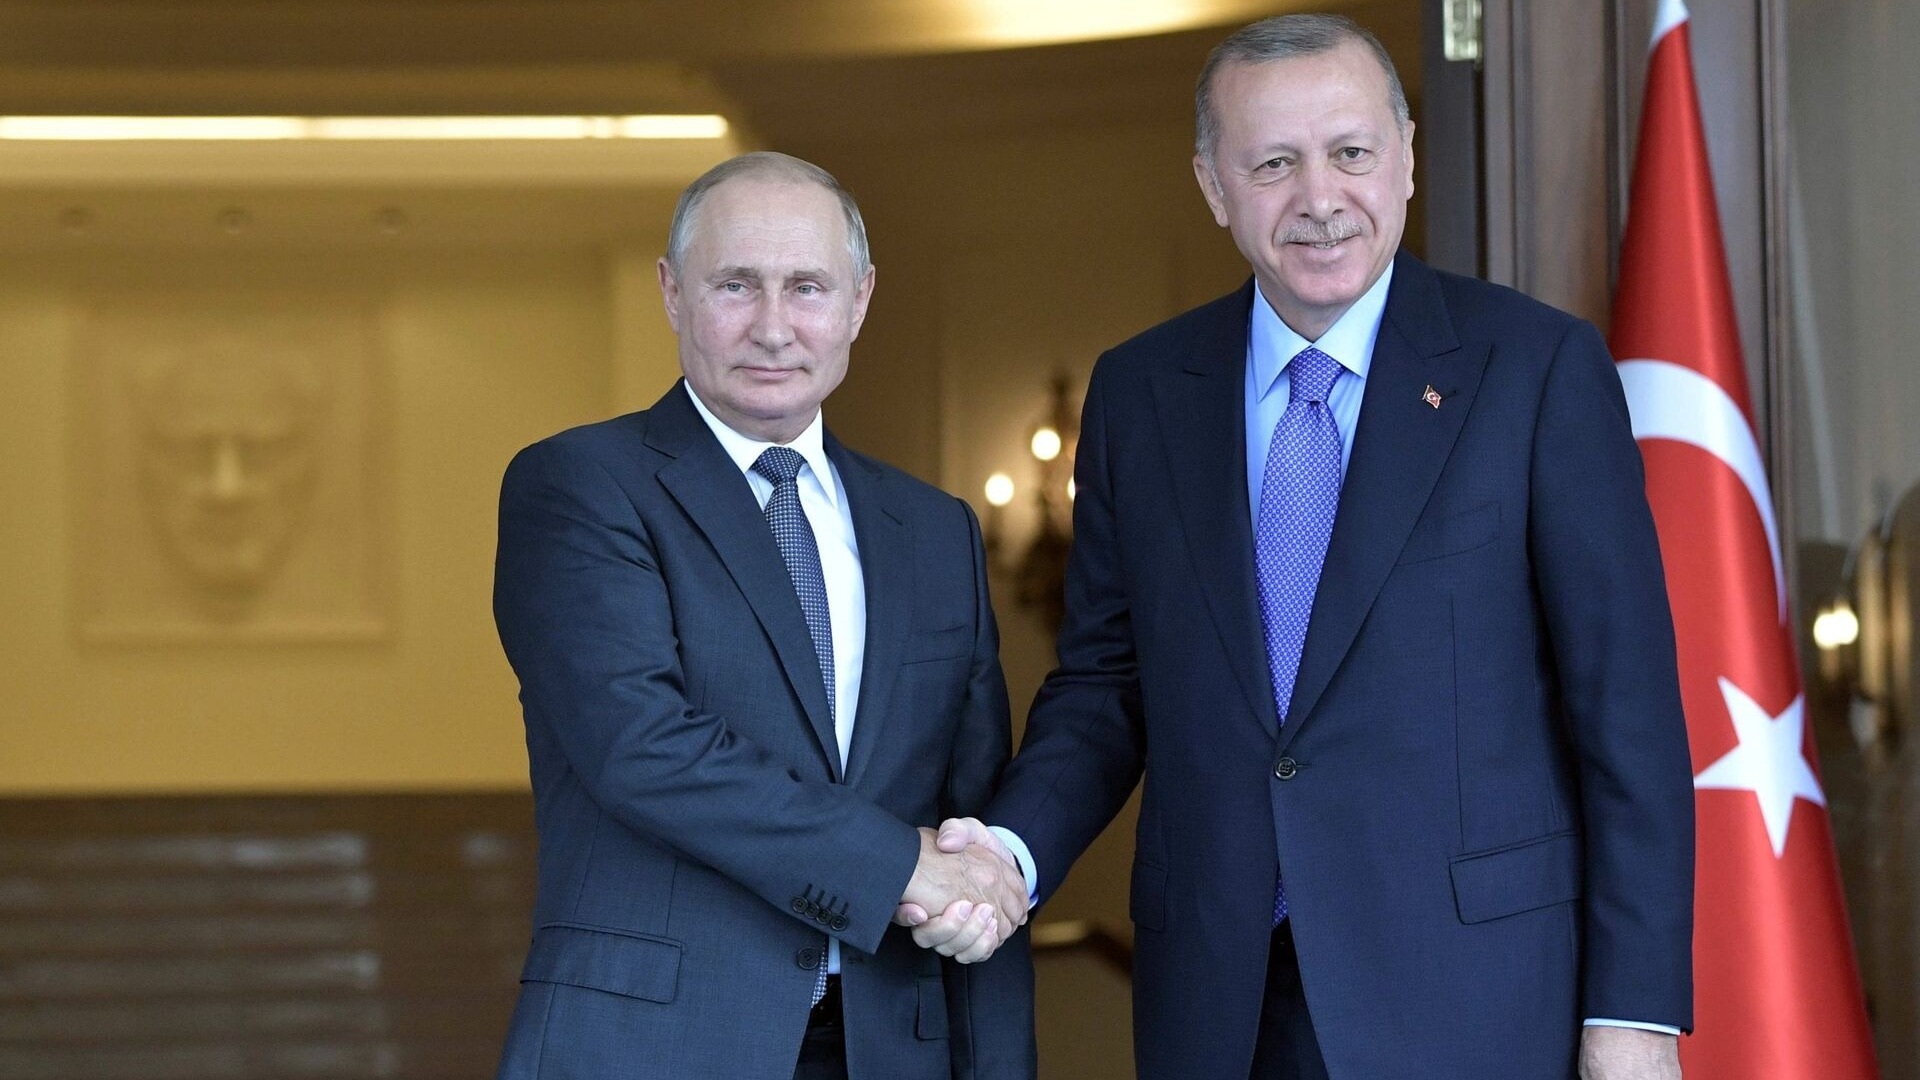 СМИ сообщили о планируемом визите Путина в Турцию